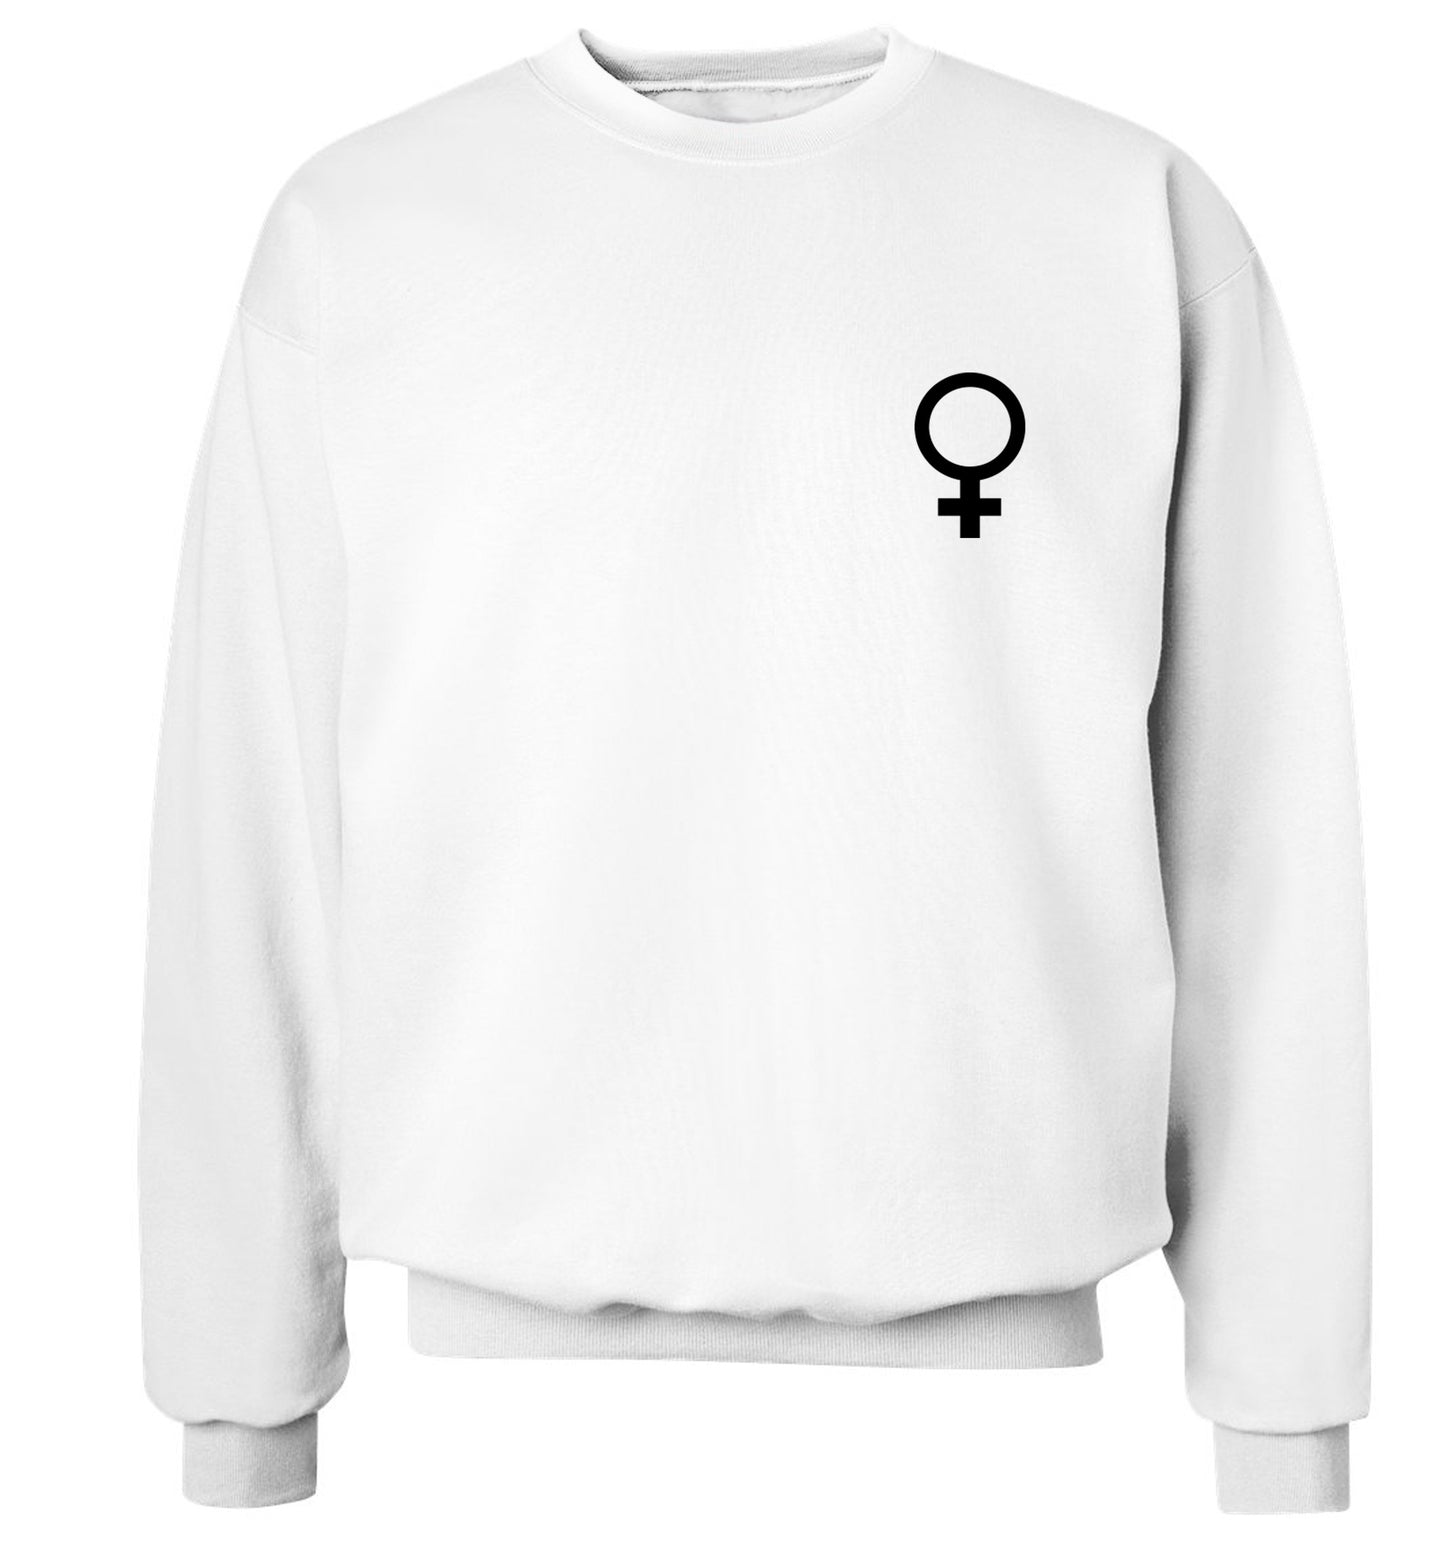 Female pocket symbol Adult's unisex white Sweater 2XL